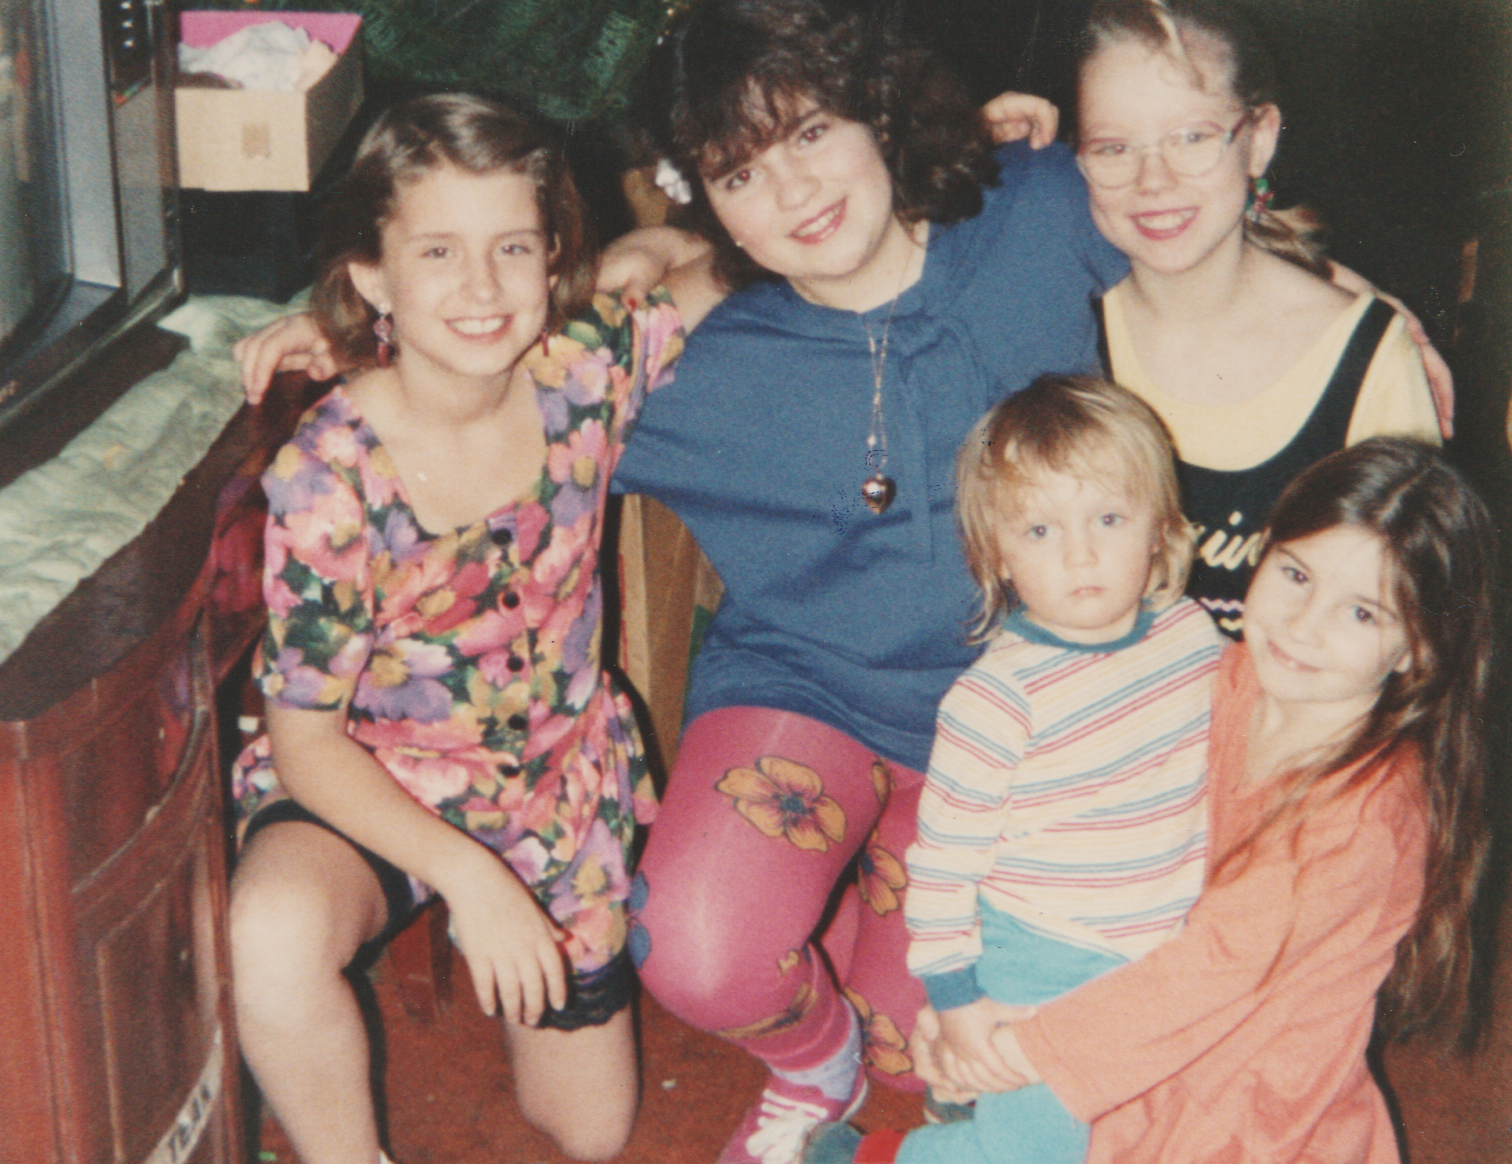 1991-12-26 - Katie, Crystal, Katrina, Kathy, Alysia, Christmas, 163 living room, TV.png